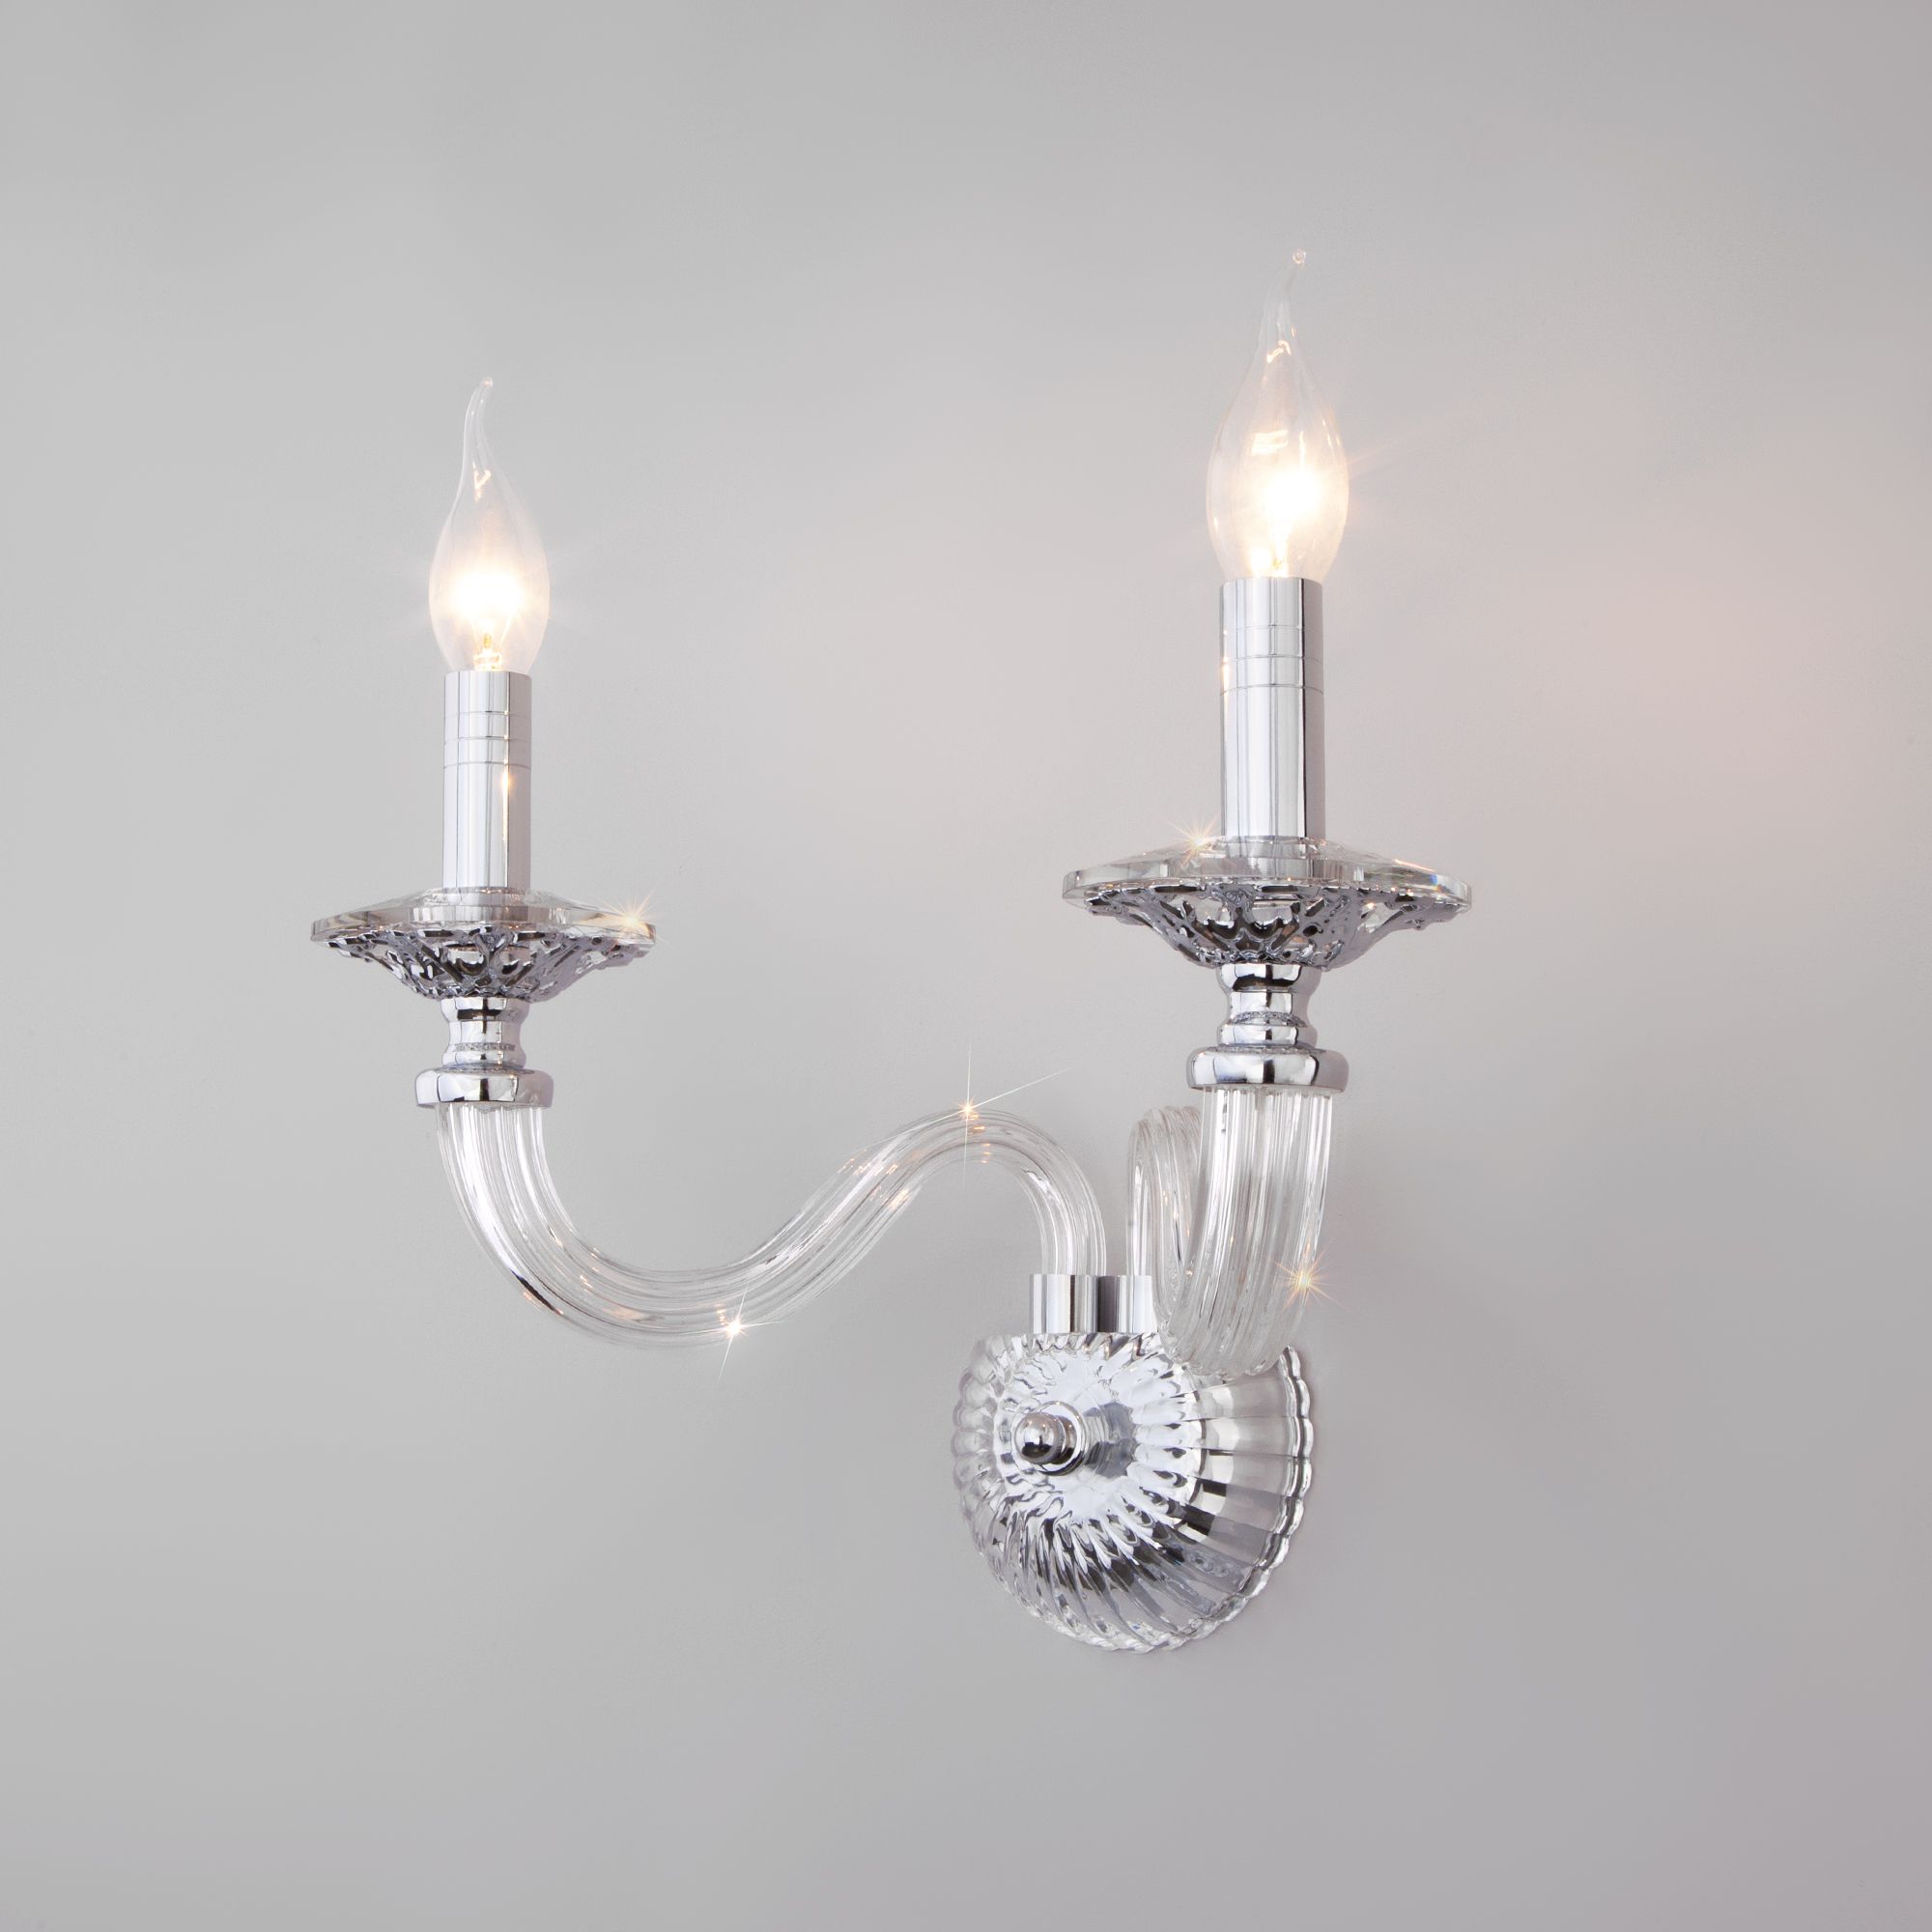 Настенный светильник в классическом стиле Bogate's Olenna 338/2. Фото 4